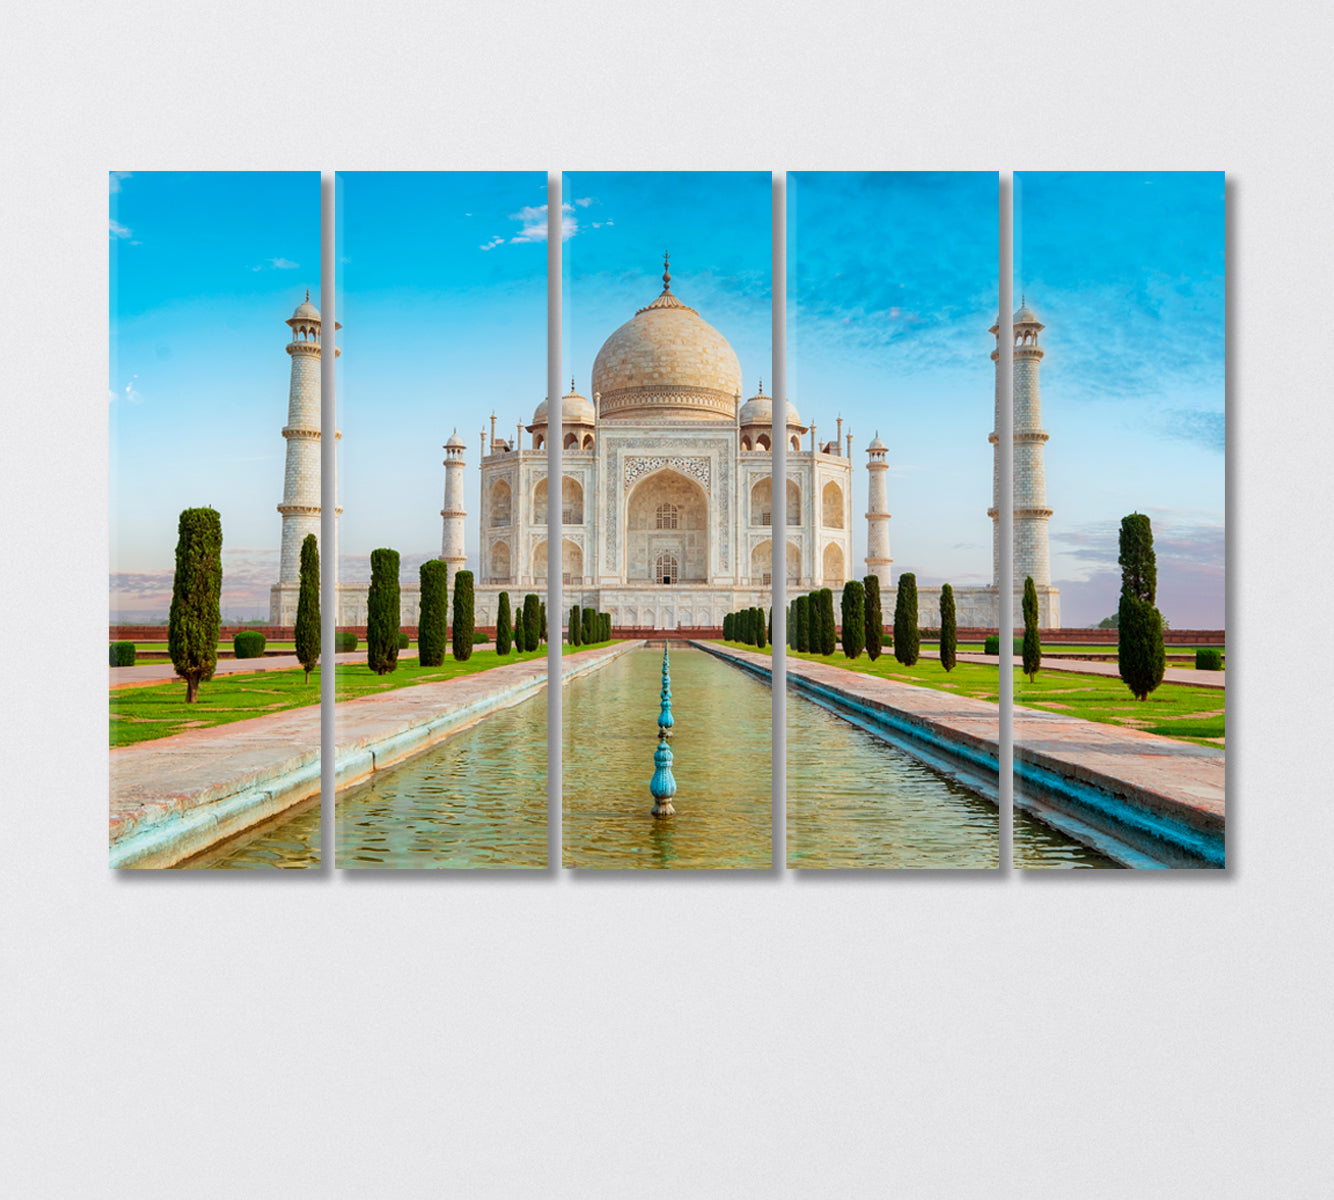 Taj Mahal Mosque India Canvas Print-Canvas Print-CetArt-5 Panels-36x24 inches-CetArt